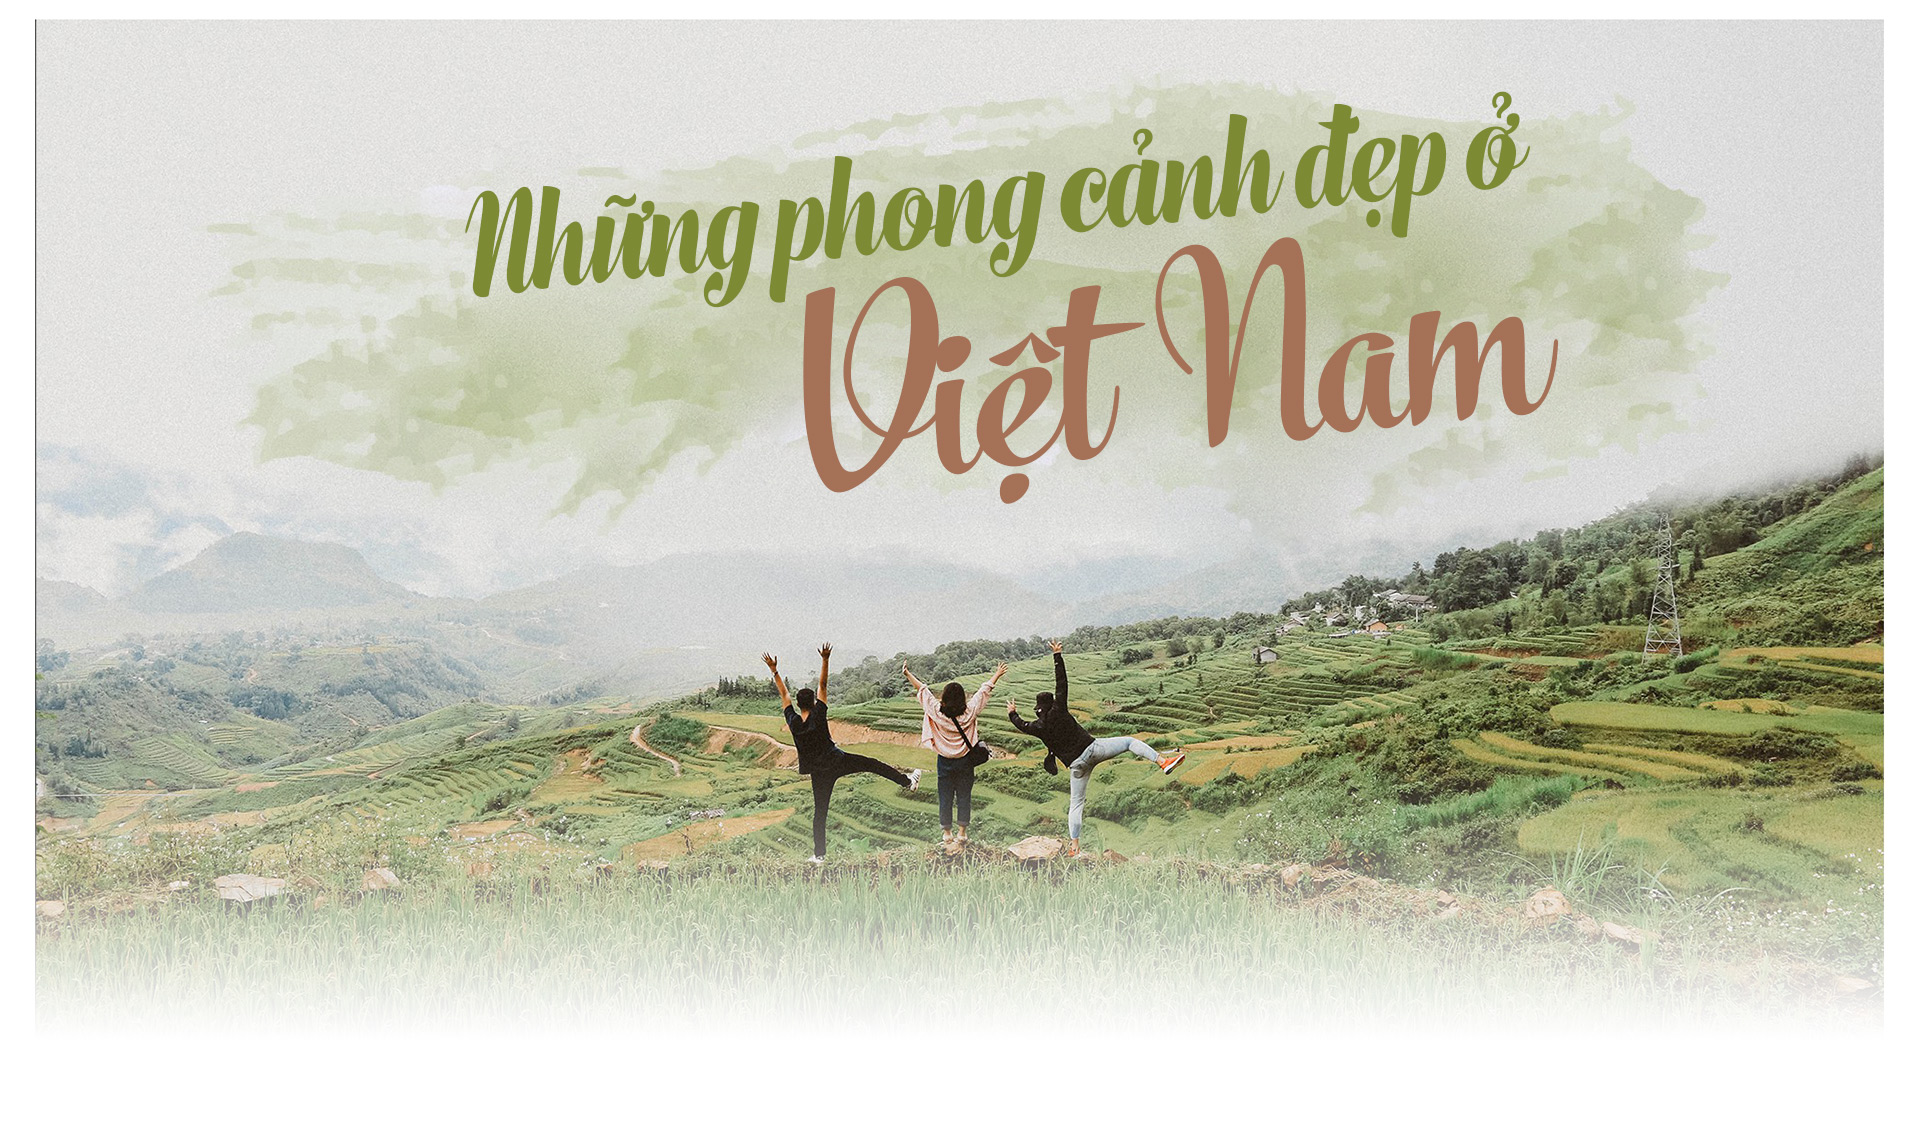 Hãy cùng chiêm ngưỡng những cảnh đẹp Việt Nam tuyệt đẹp với những hình ảnh lung linh và màu sắc rực rỡ. Đất nước Việt Nam có nhiều điểm đến đẹp như trời chiếu, và đó sẽ là một trải nghiệm đầy ấn tượng.